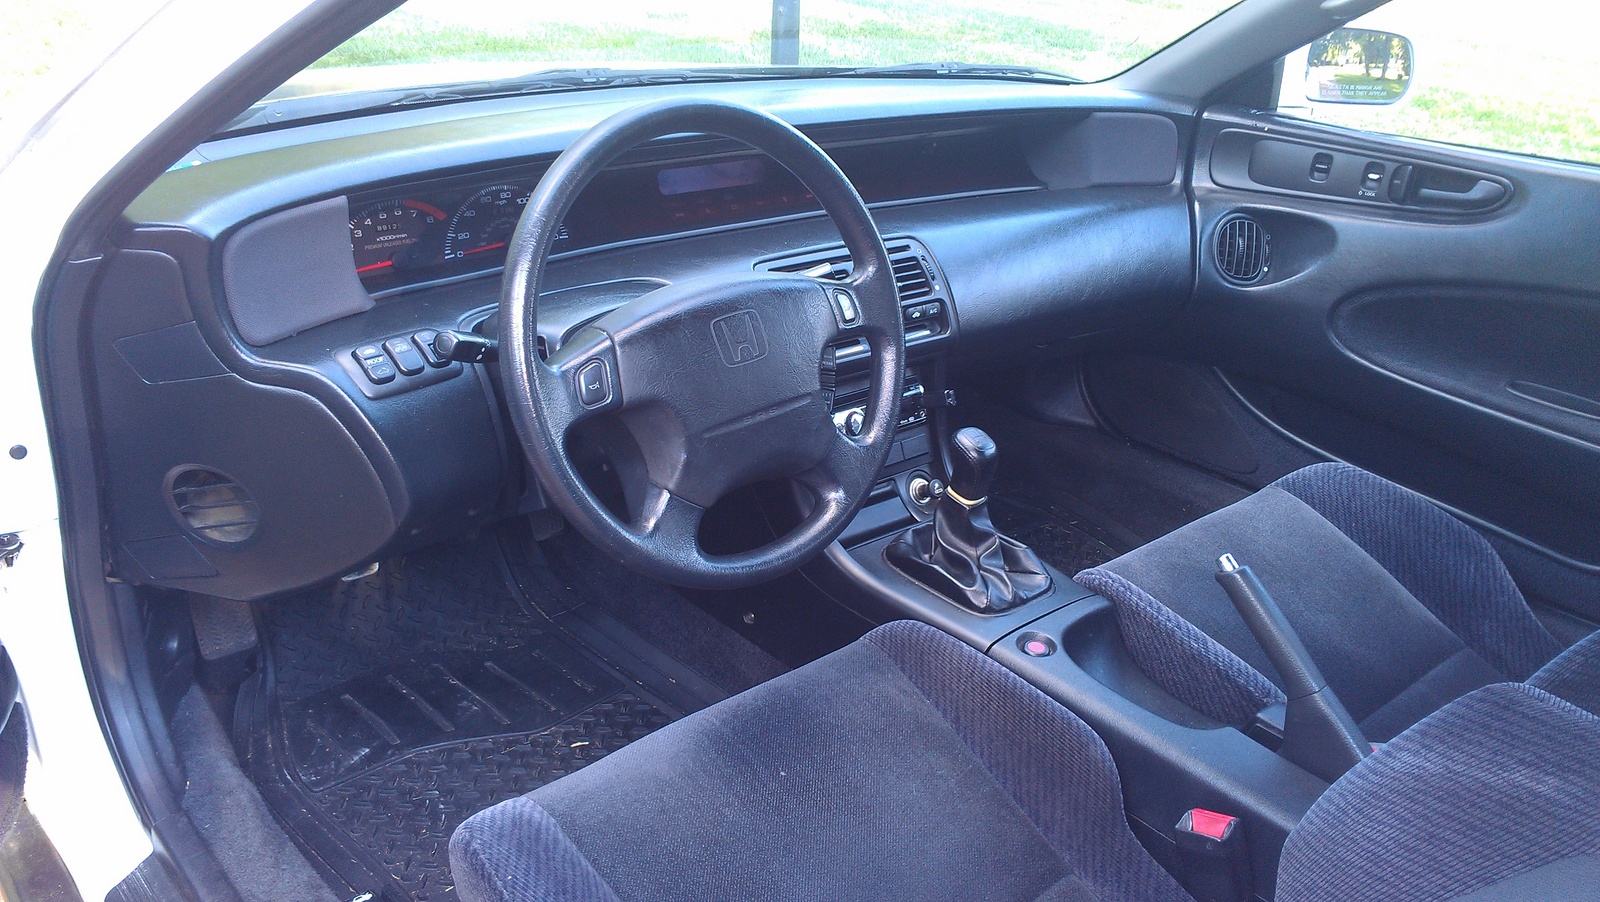 1992 Honda prelude interior